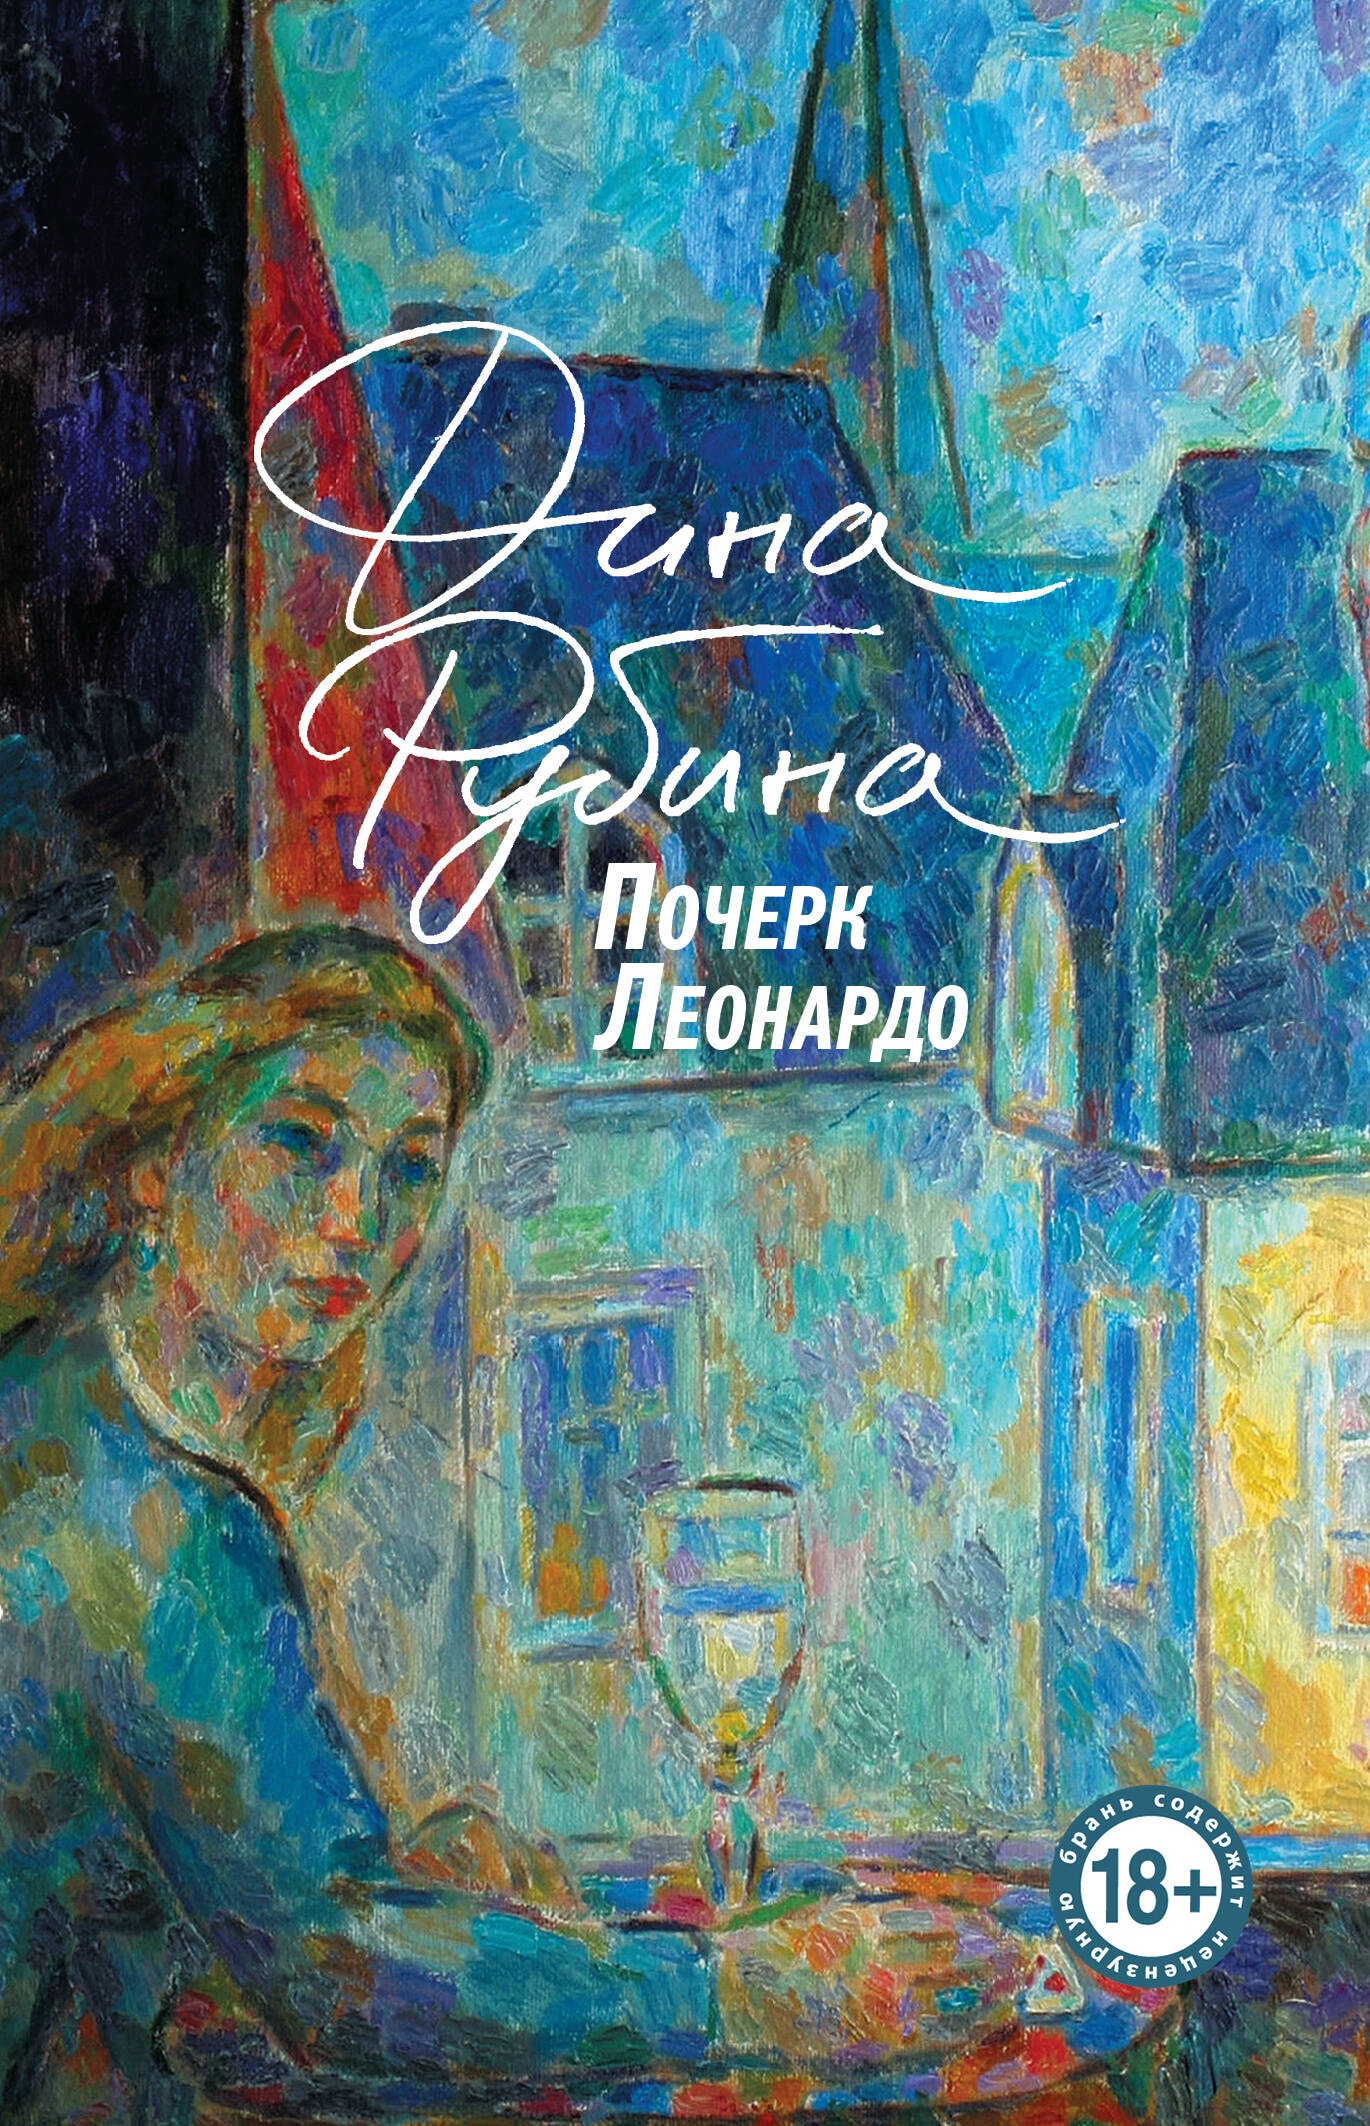 Book “Почерк Леонардо” by Дина Рубина — 2024